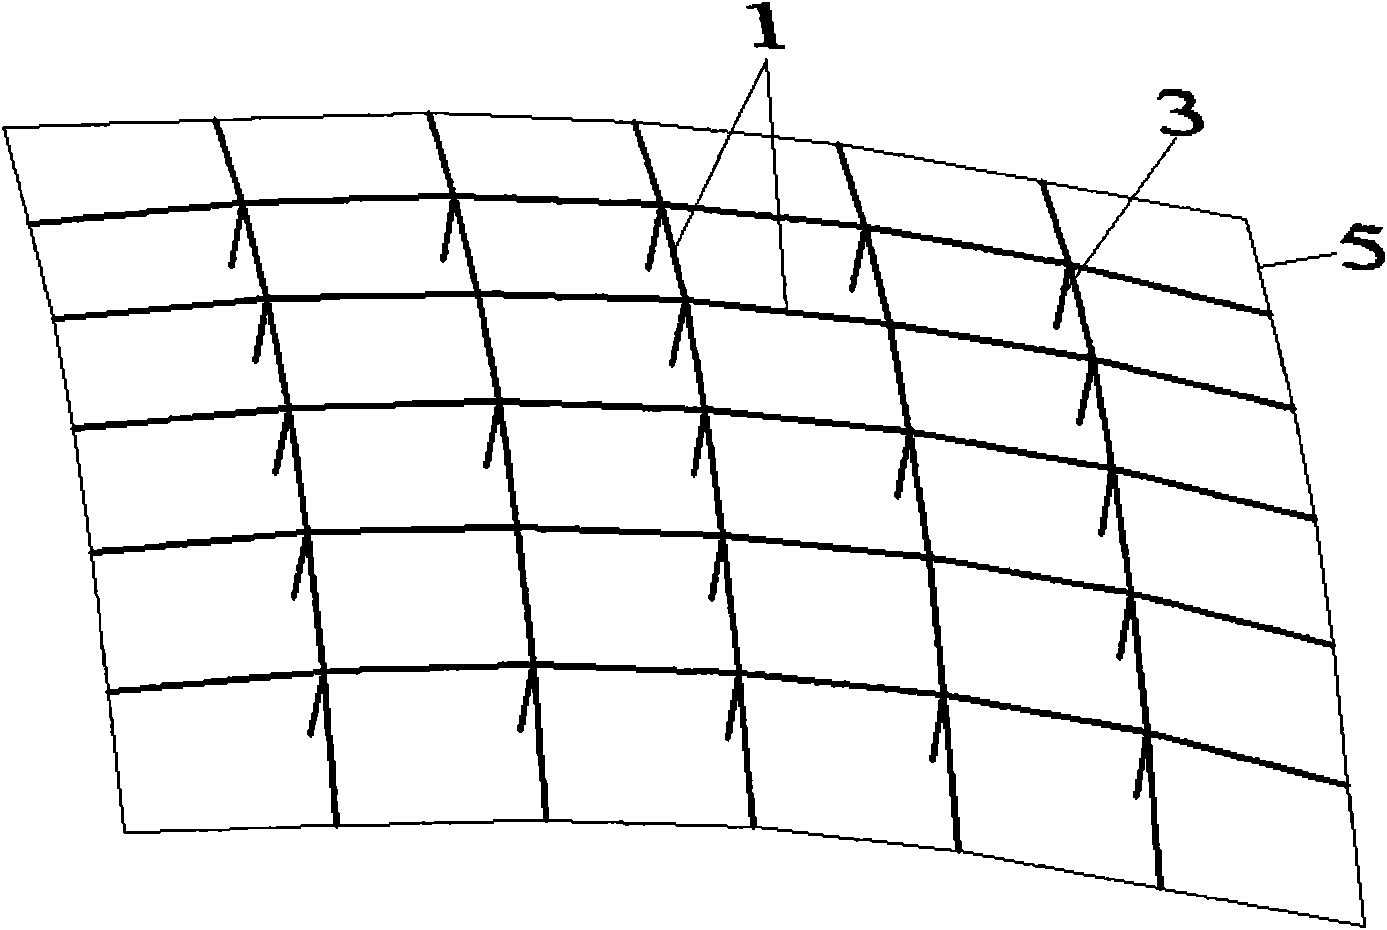 Square rigid cable dome structure